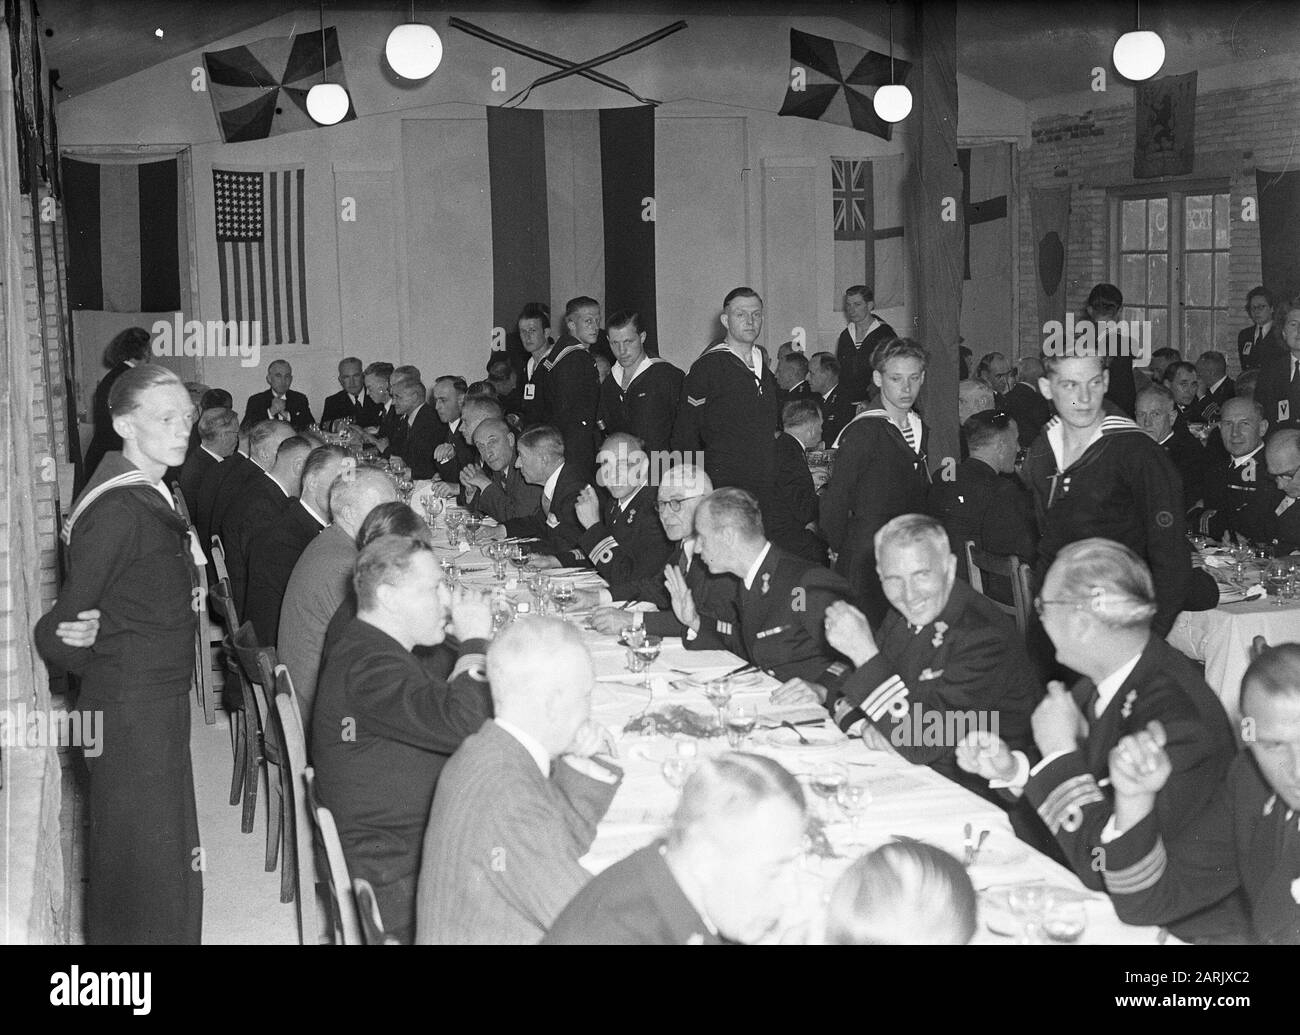 U-Boot-Dienst zum vierzigjährigen Jubiläum. Die Beamten des Abendessens sind Reunisten. Übersicht Datum: 18. Juni 1947 Ort: Rotterdam-Stichwörter: Jahrestage, Mahlzeiten, Marine Stockfoto